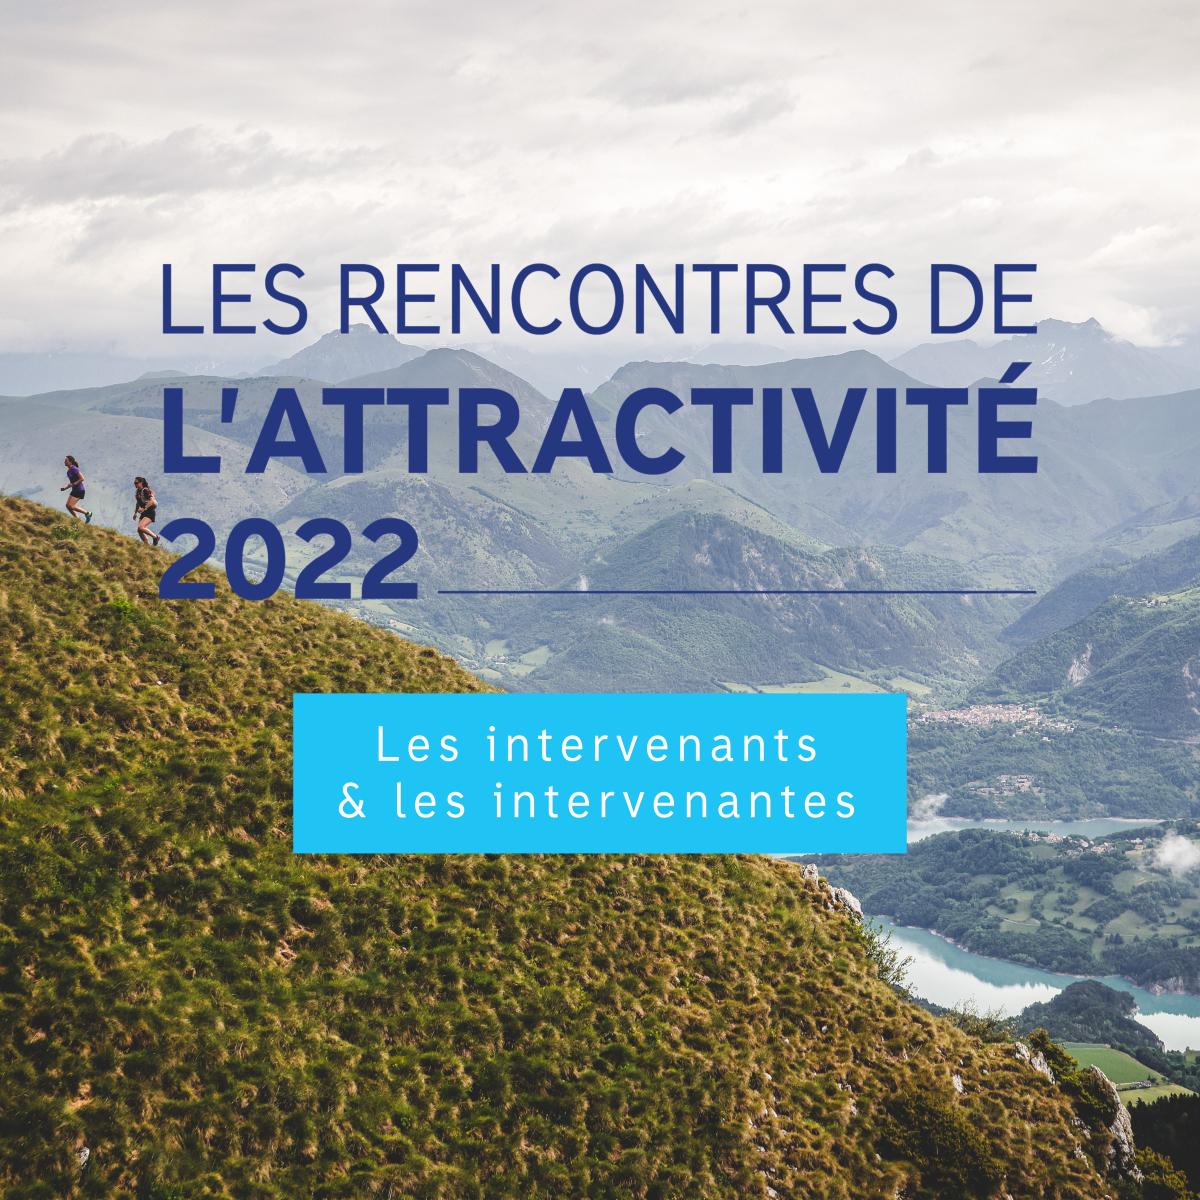 intervenants et intervenantes des rencontres de l'attractivité 2022